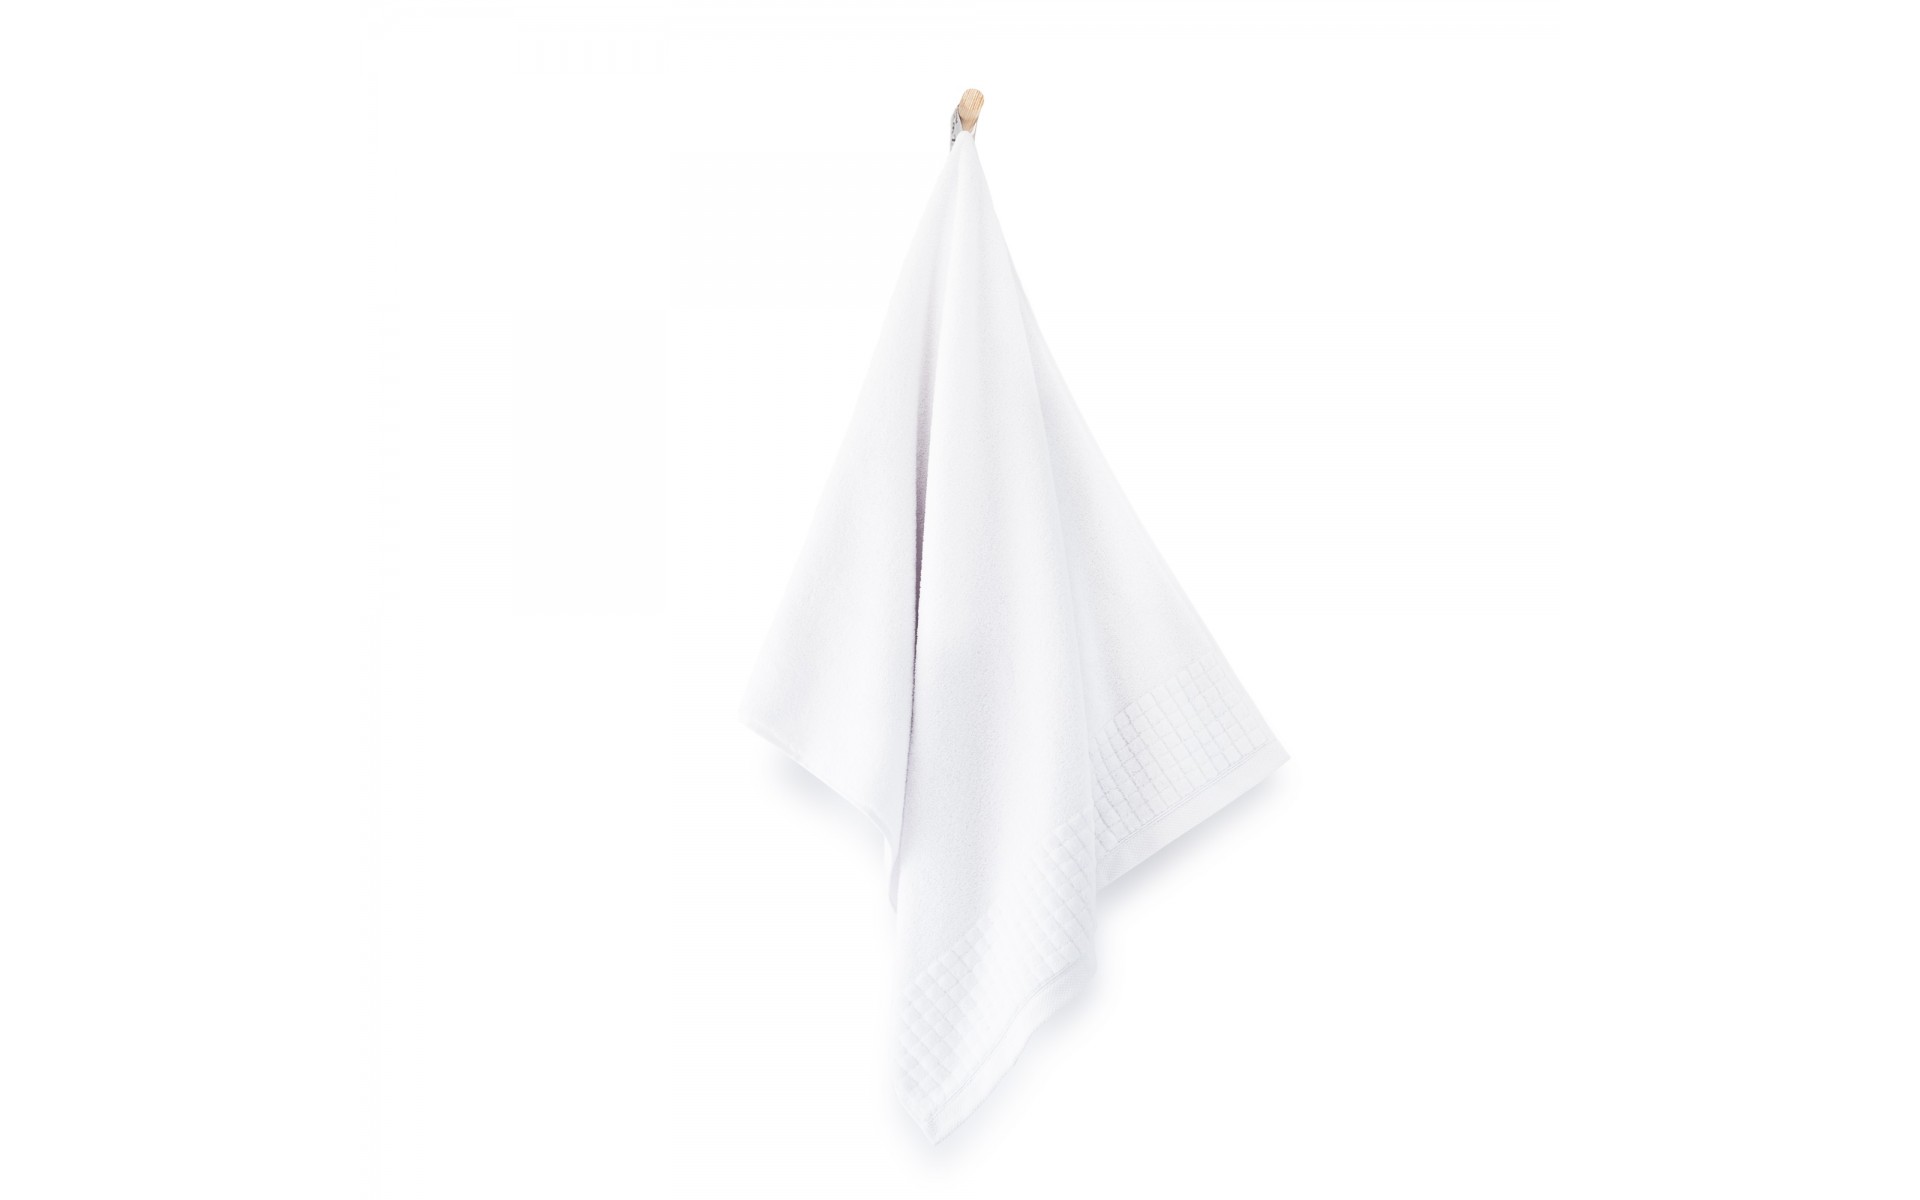 ręcznik PAULO 3 AB biały - 6026